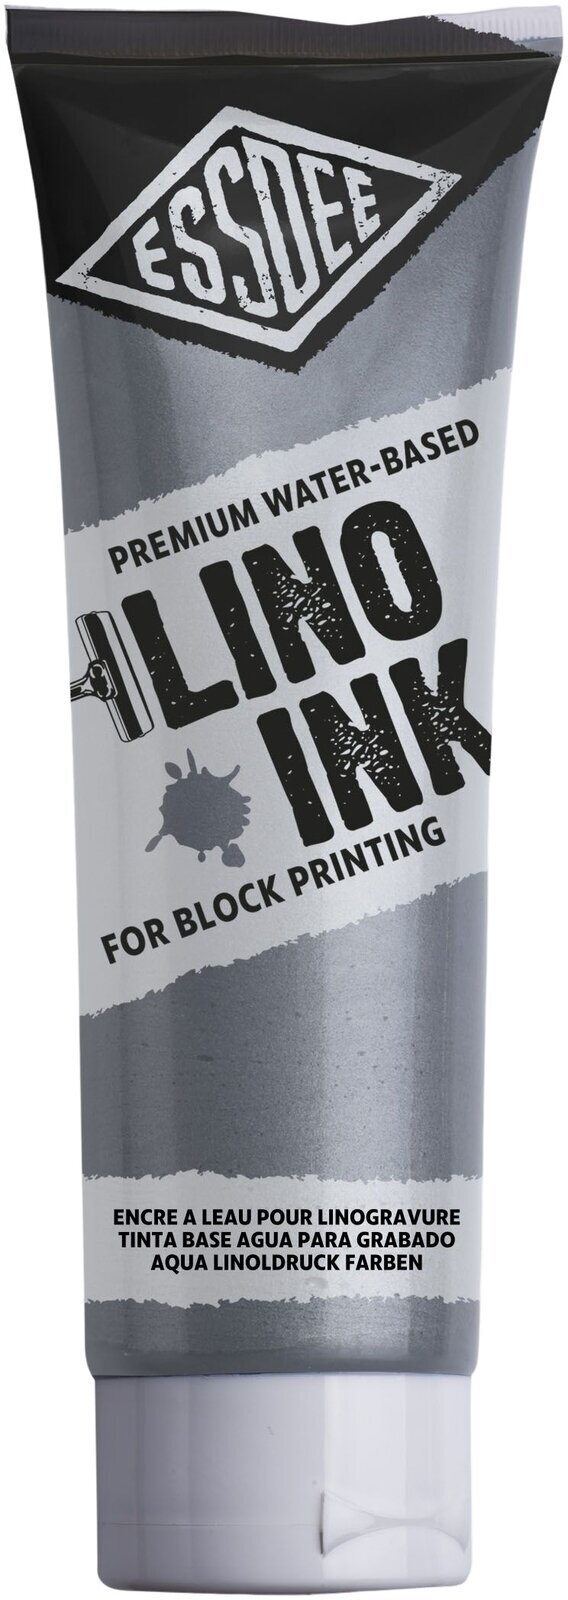 Tinta para linogravura Essdee Block Printing Ink Tinta para linogravura Metallic Silver 300 ml